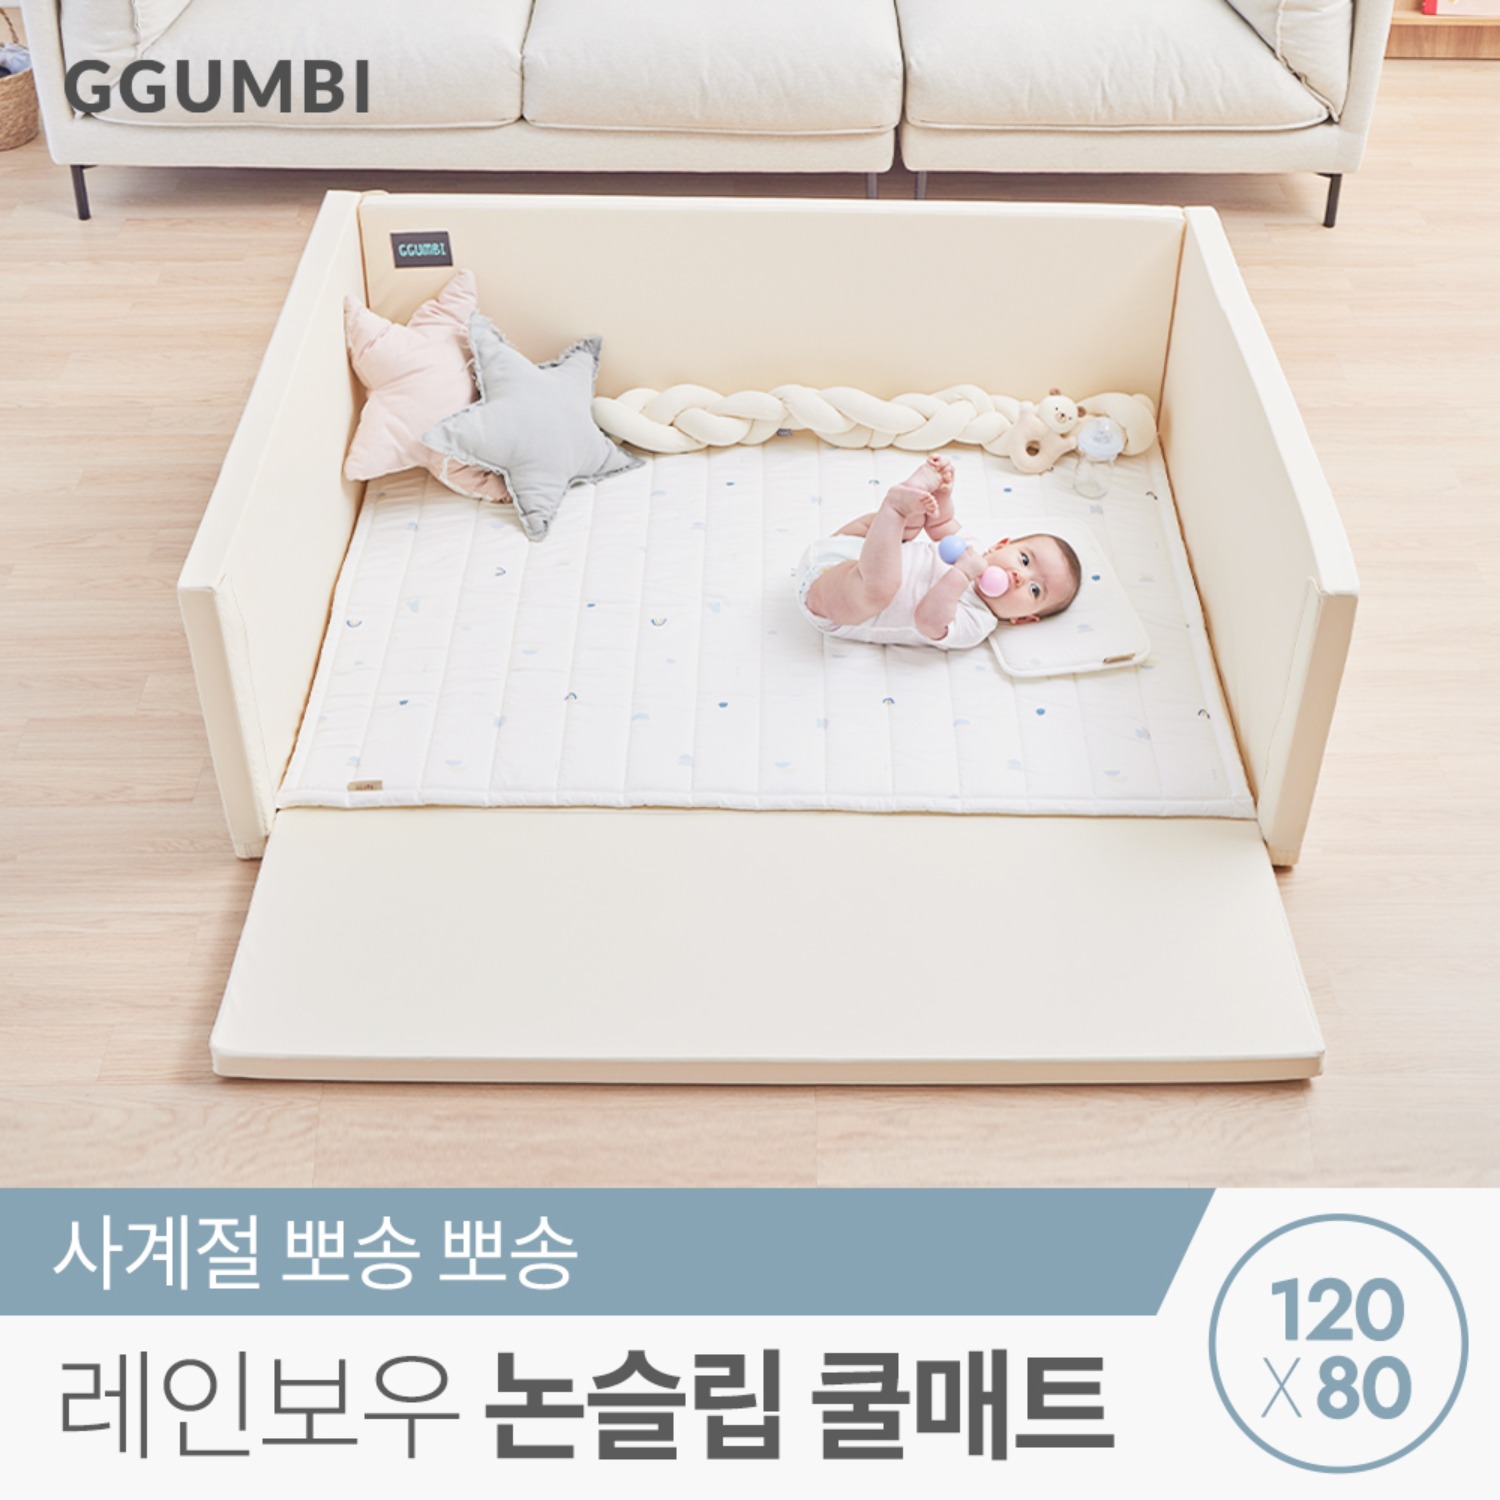 [꿈비] 레인보우 논슬립 3D 쿨매트 80x120cm 신생아 아기 에어메쉬 쿨매쉬